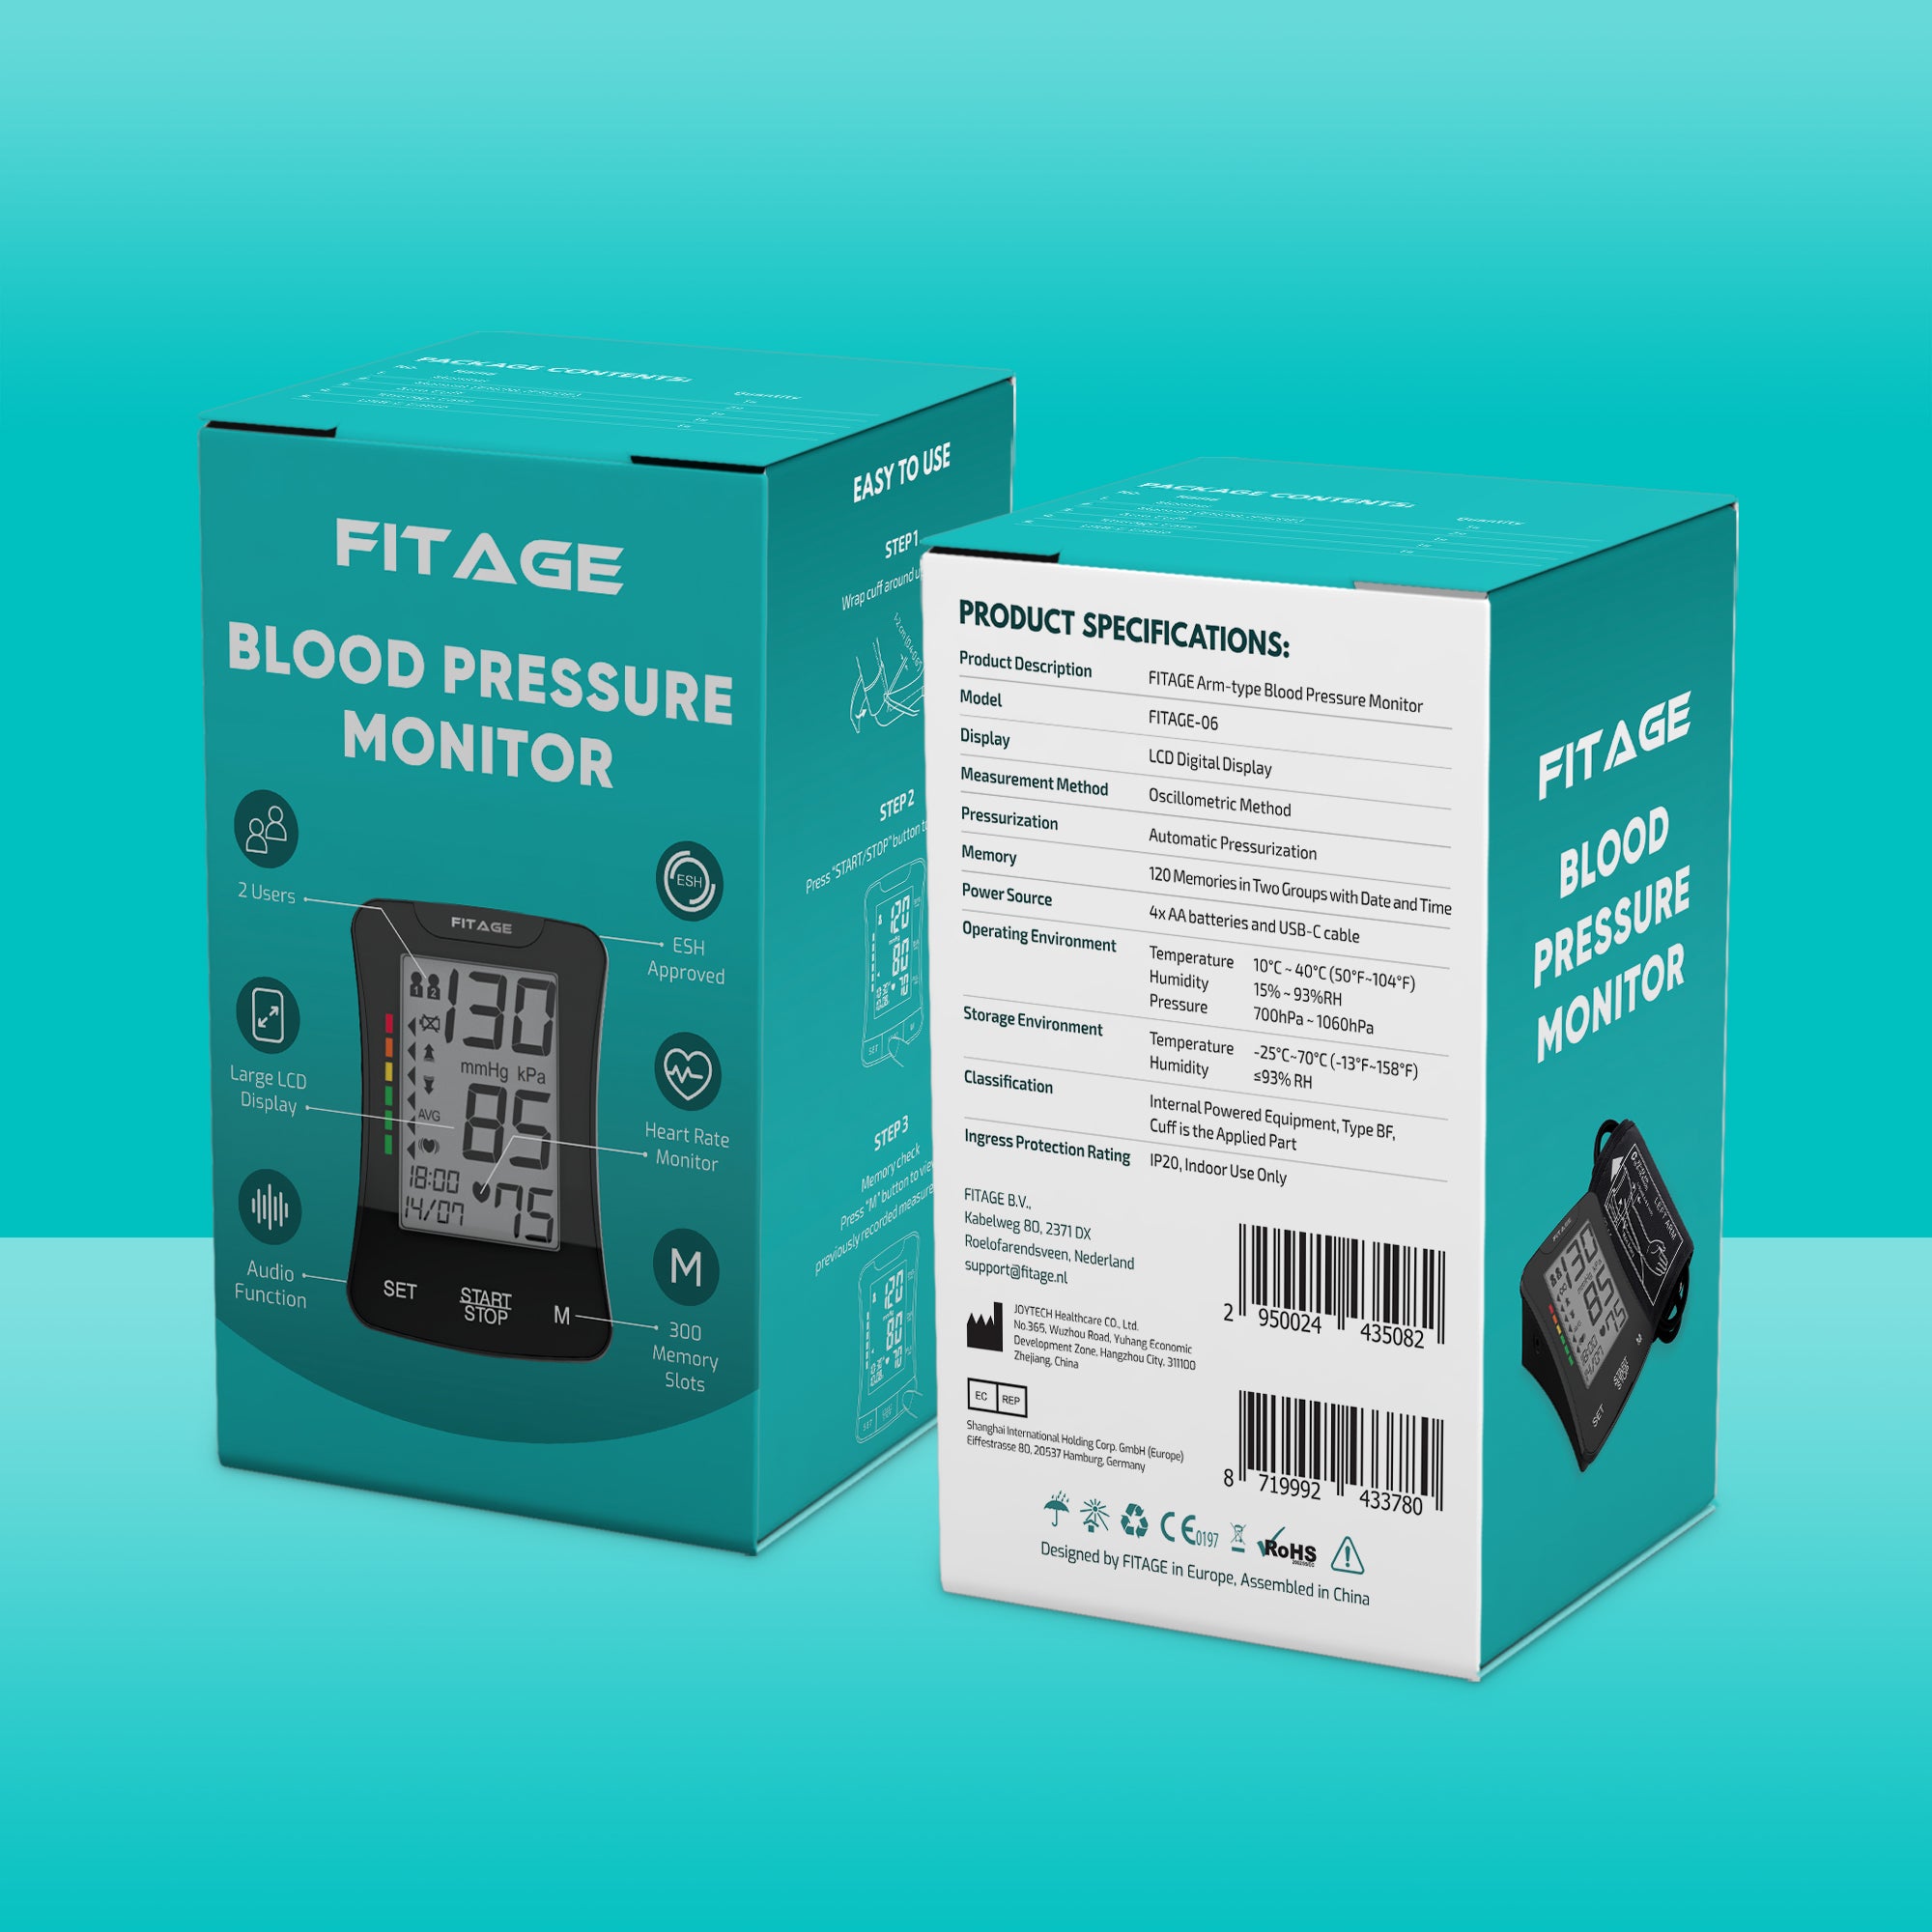 Medische Bovenarm Bloeddrukmeter - Bloeddrukmeters - Hartslagmeter - Blood Pressure Monitor - Omtrek manchet 22-42cm